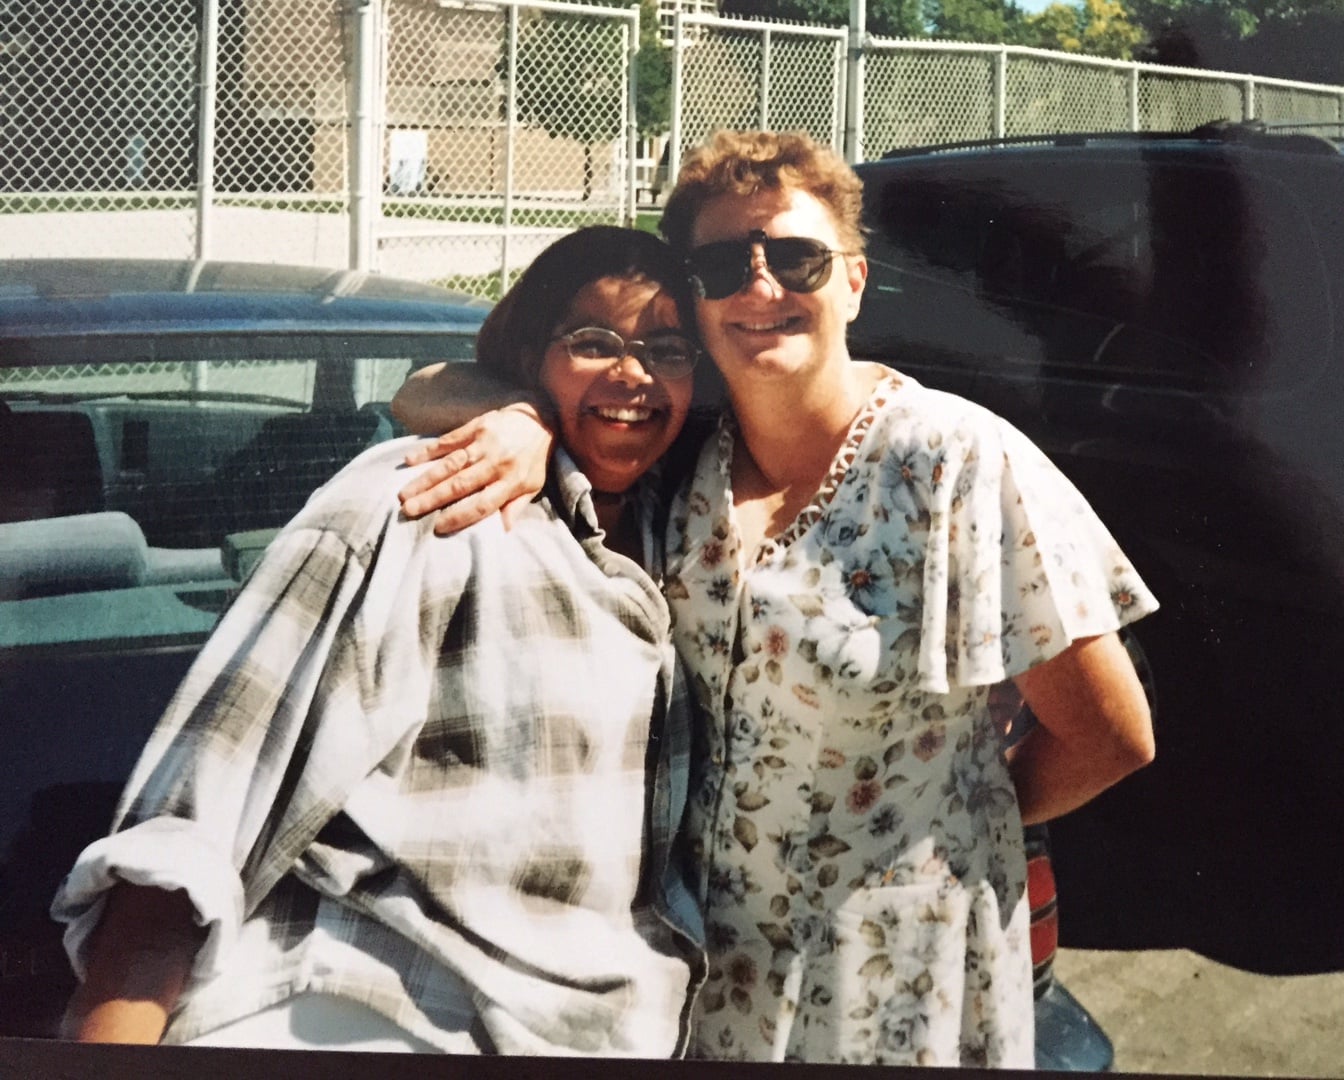 Sarah and Cheryle circa 1999